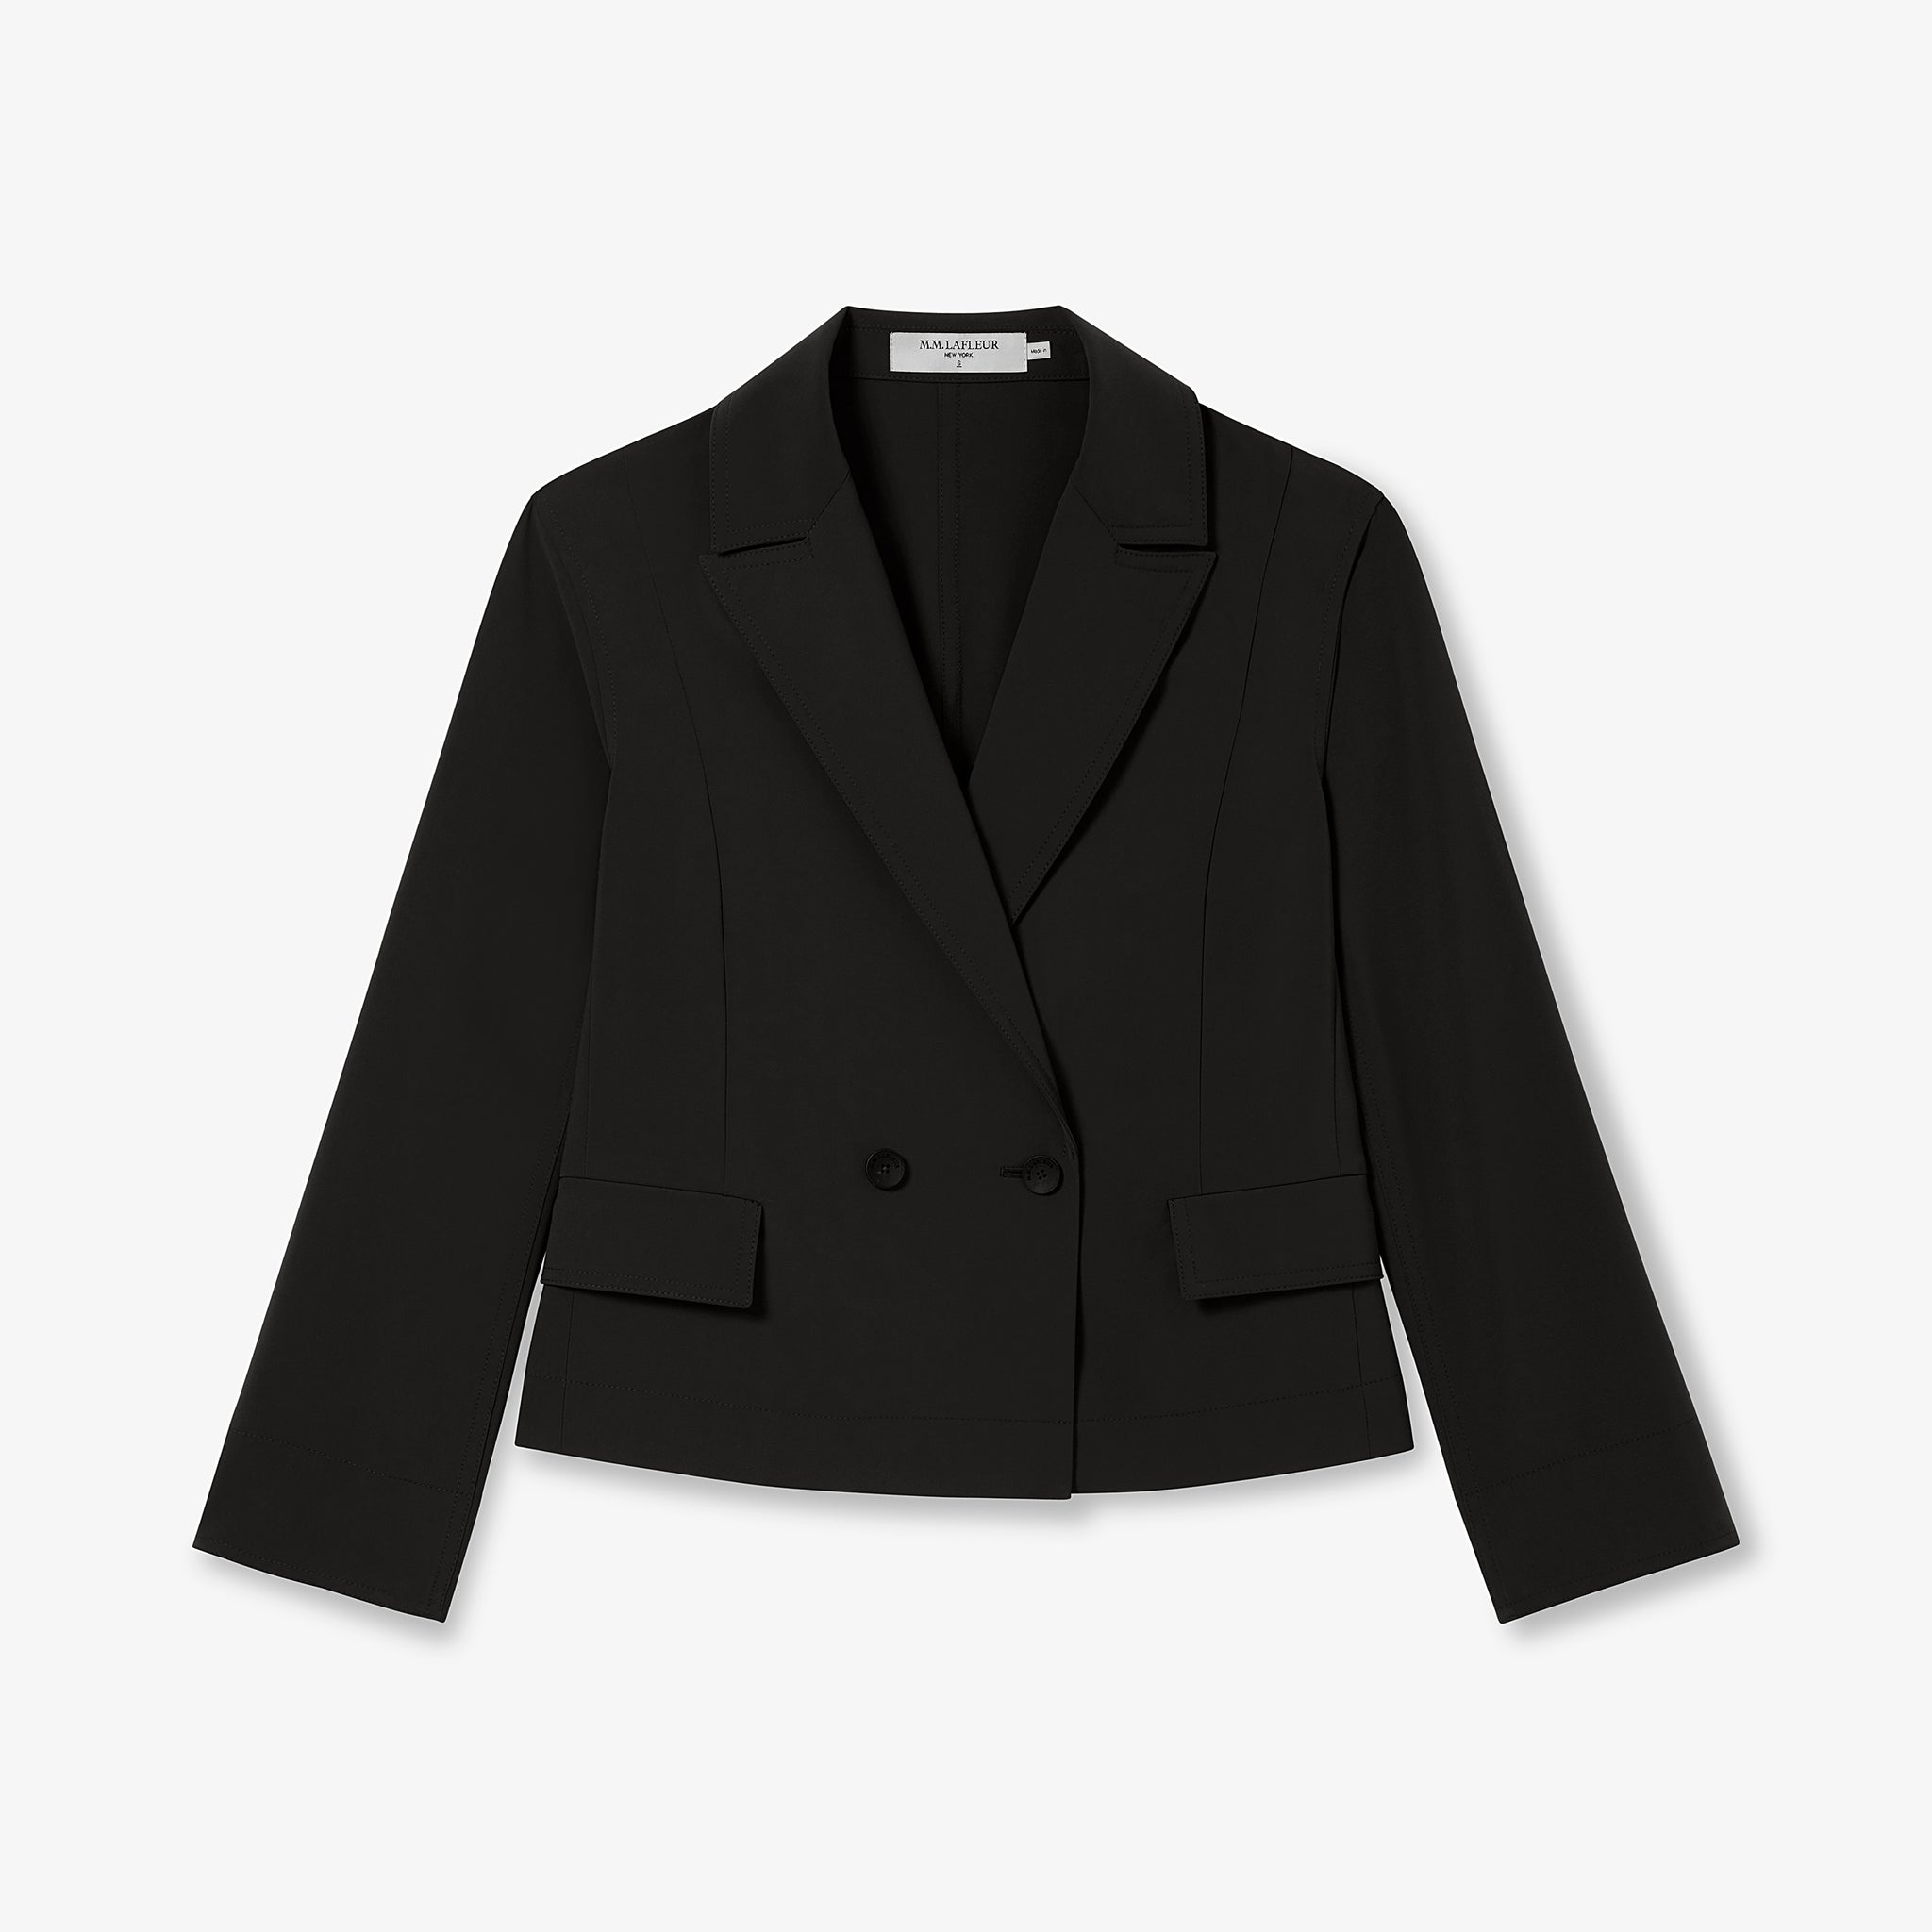 Packshot image of the Nia Jacket in Black